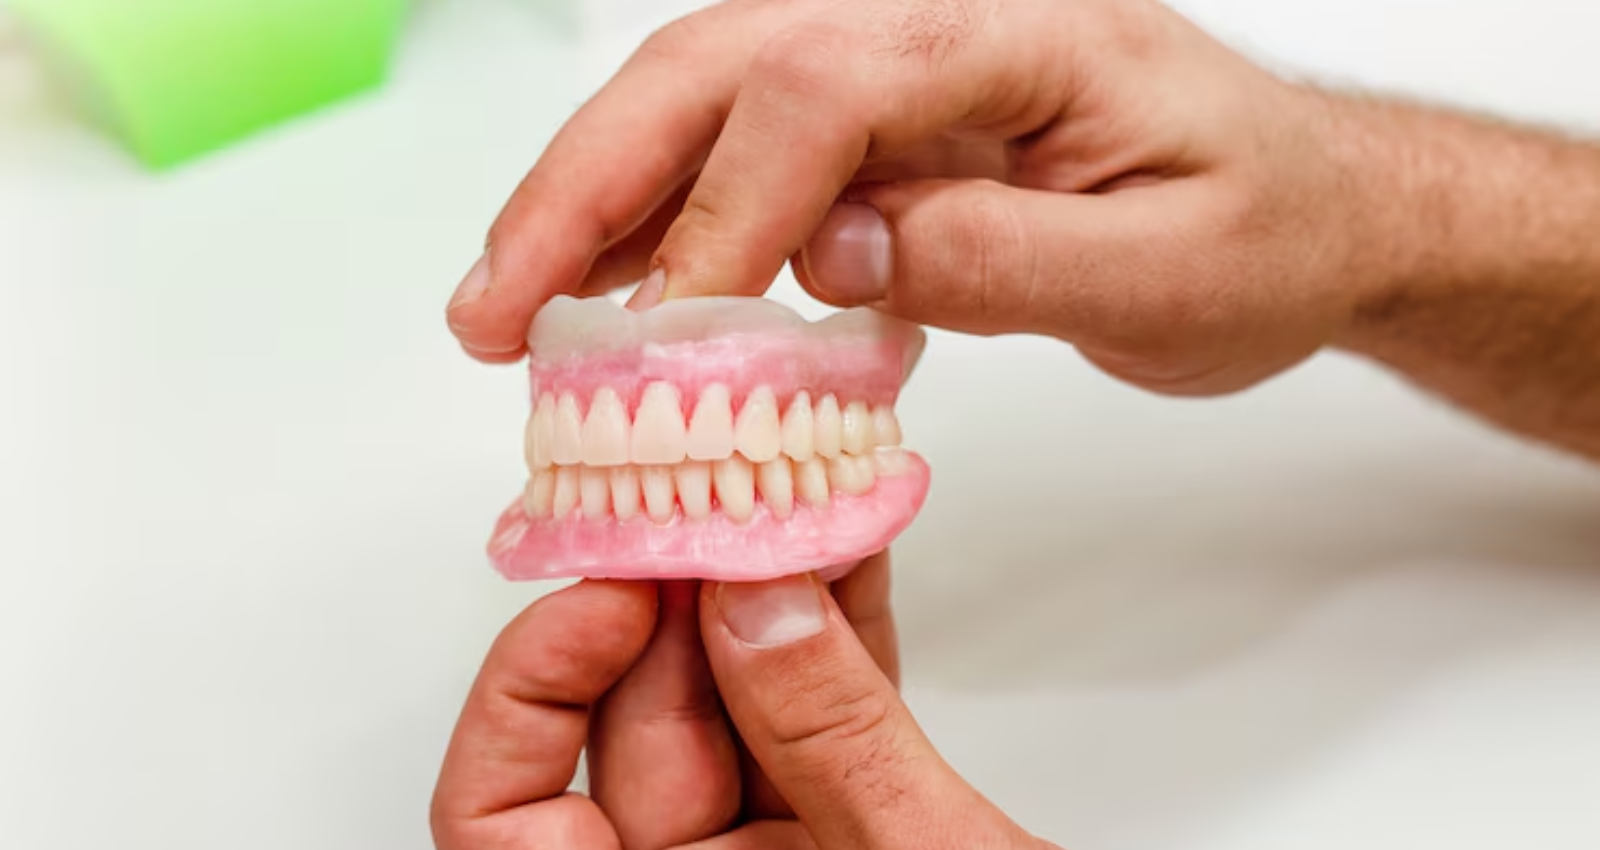 dentures help protect your jaw bones